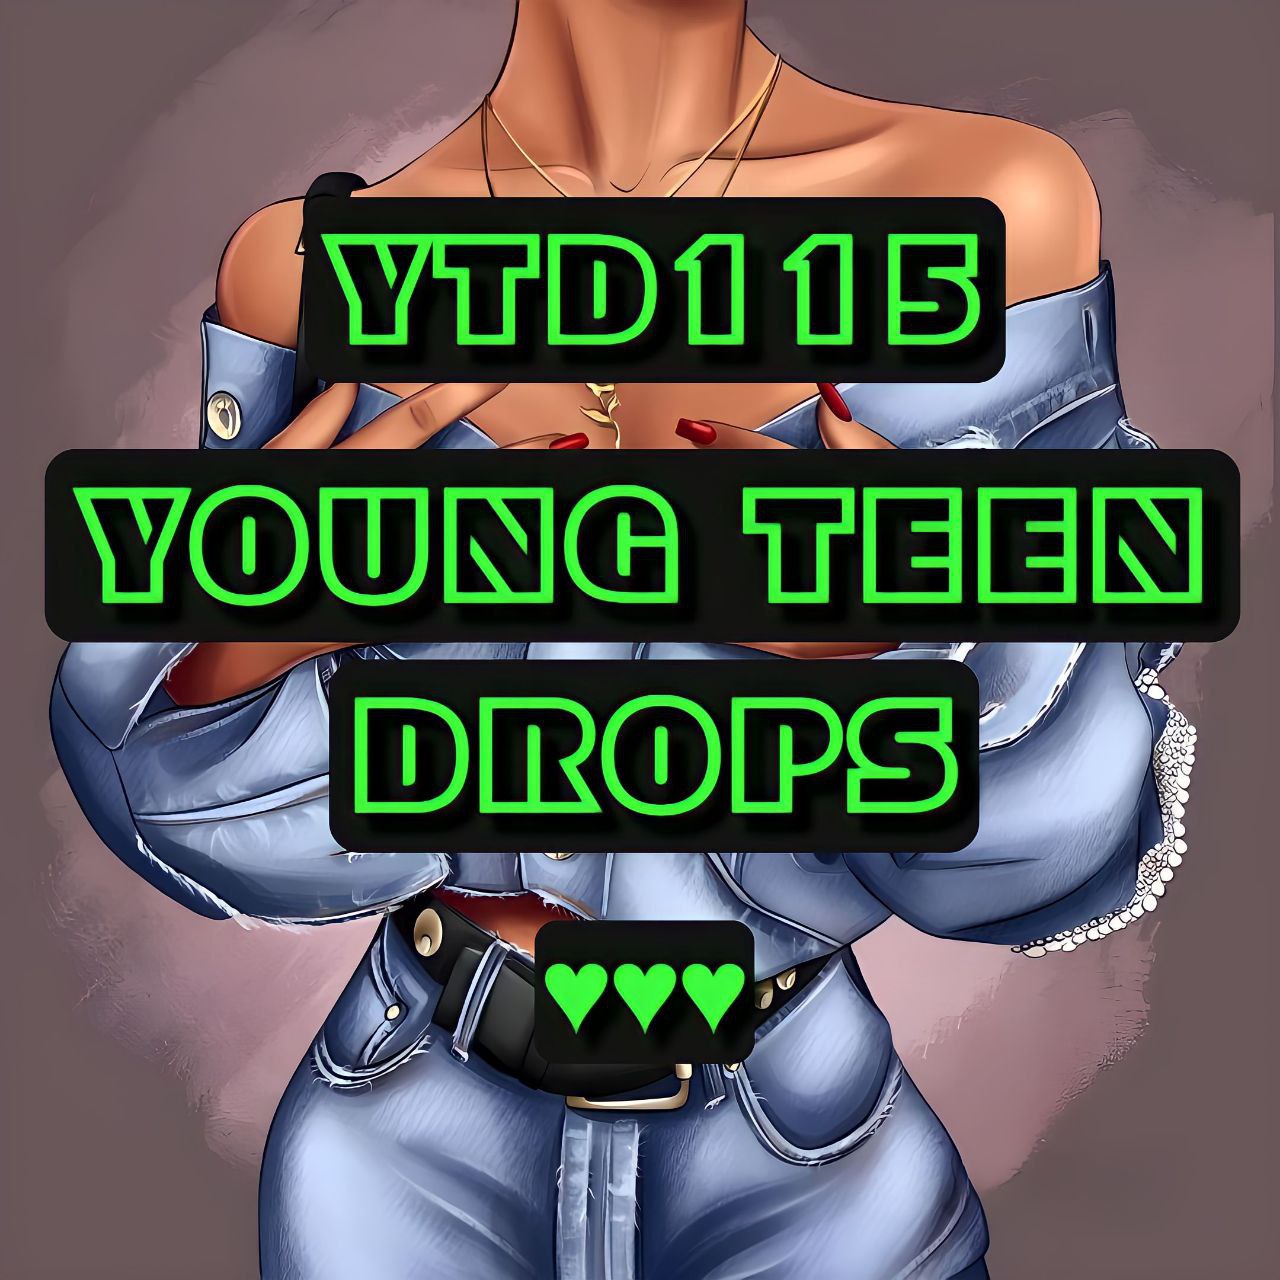 YTD115